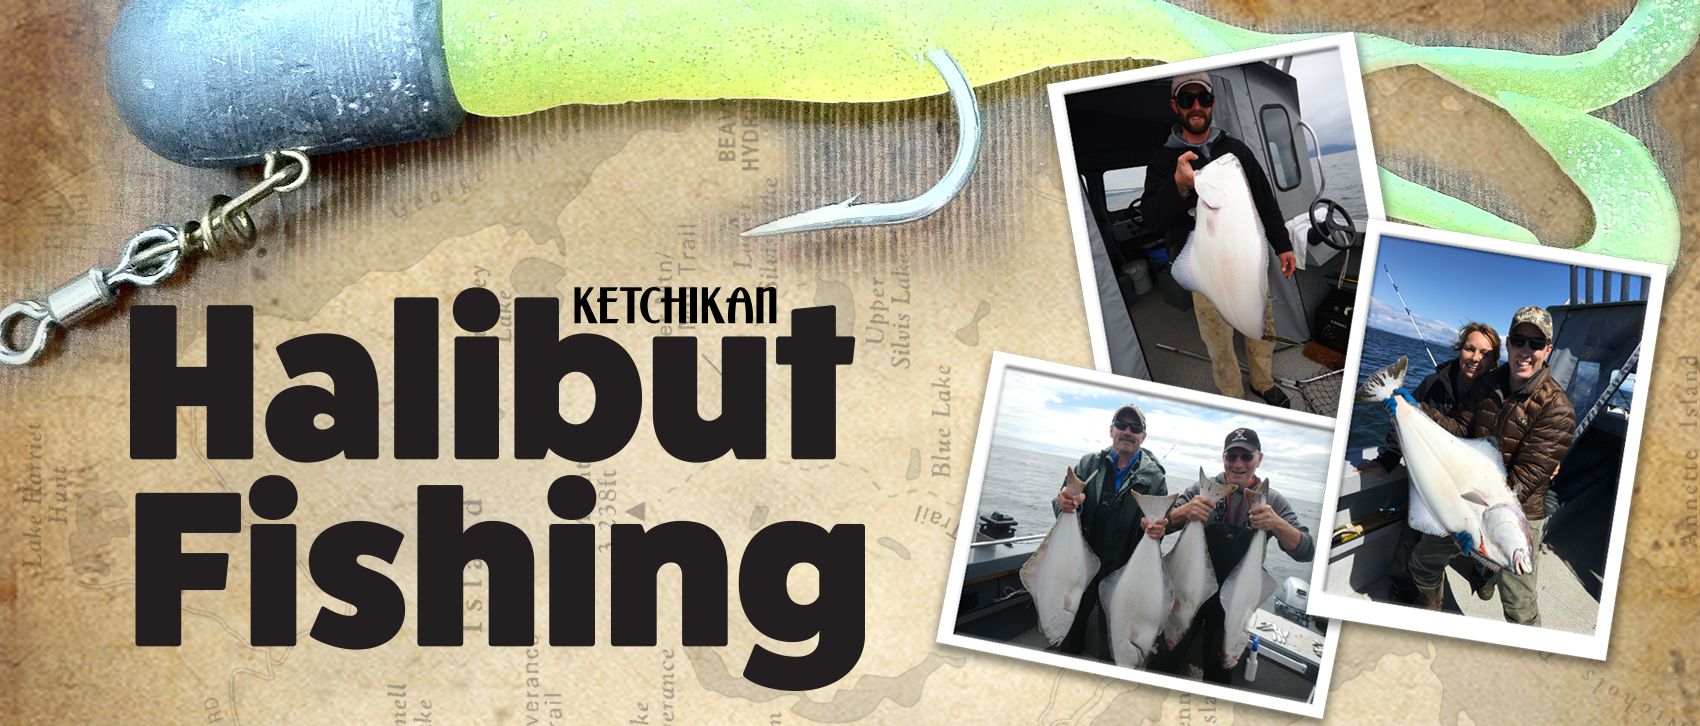 Best Halibut Fishing in Ketchikan